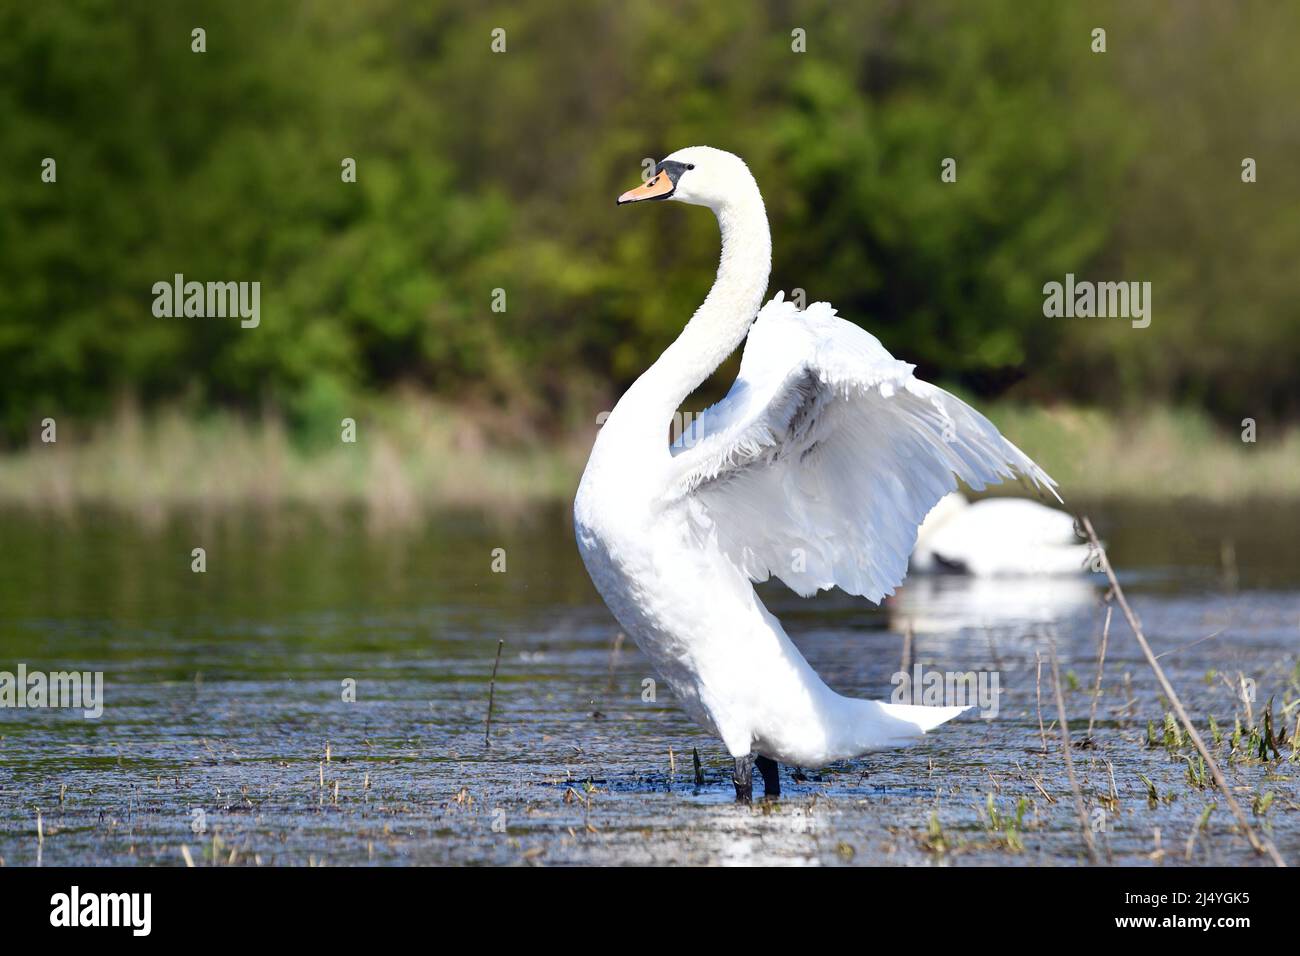 Swan bird flapping wings in lake Stock Photo